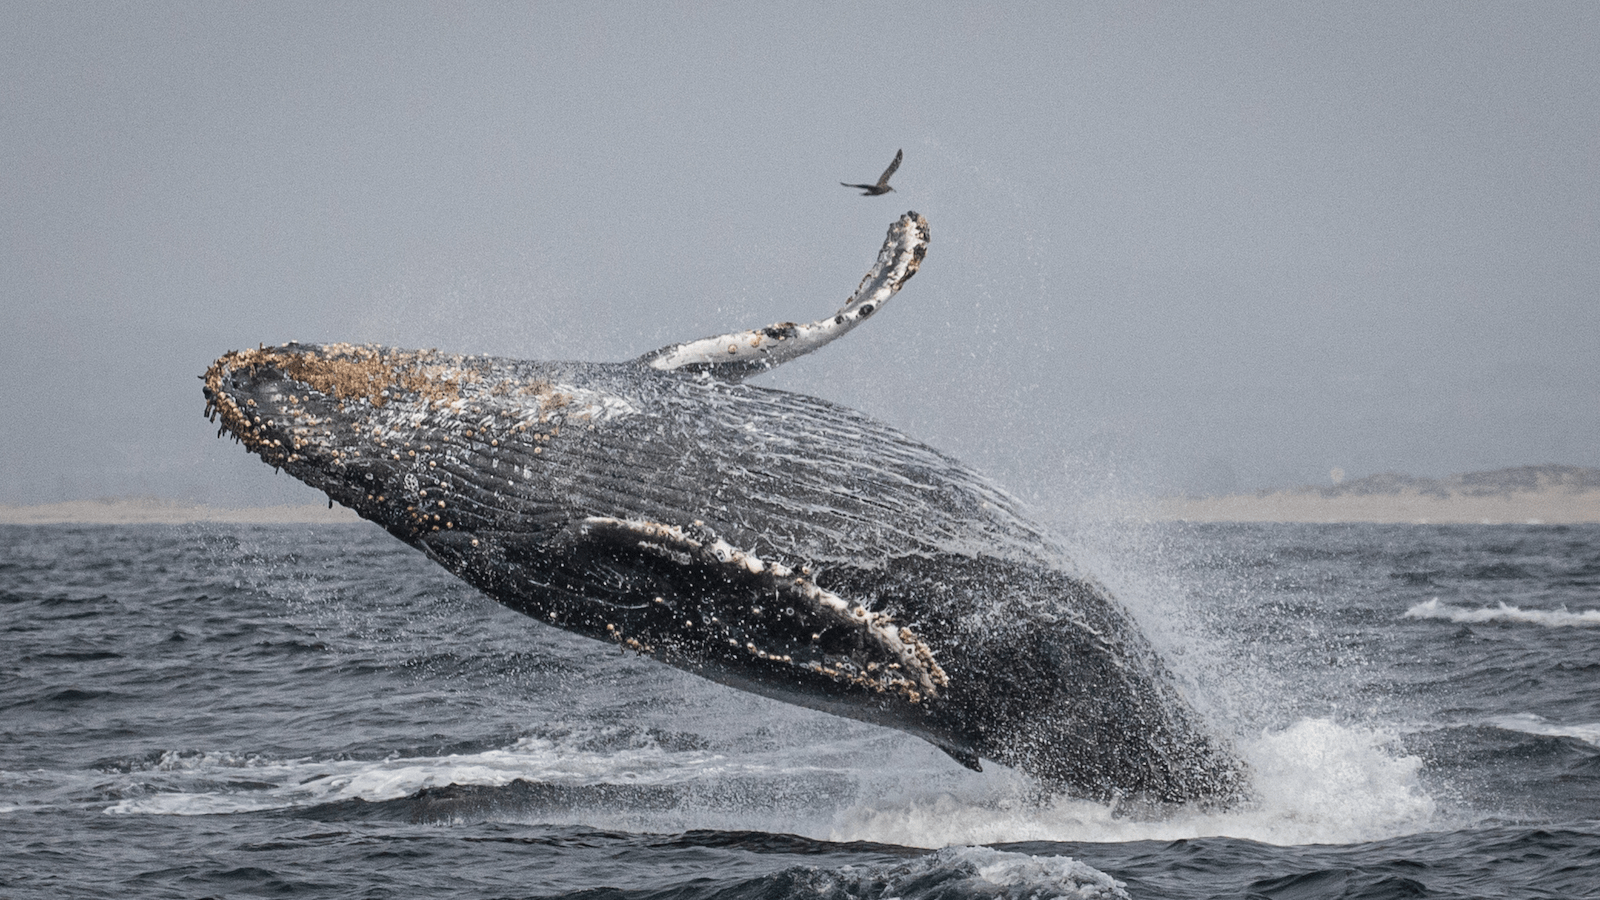 do_whale watching_breaching humpback _800x450_Daniel Bianchetta _ Monterey Bay Whale Watch